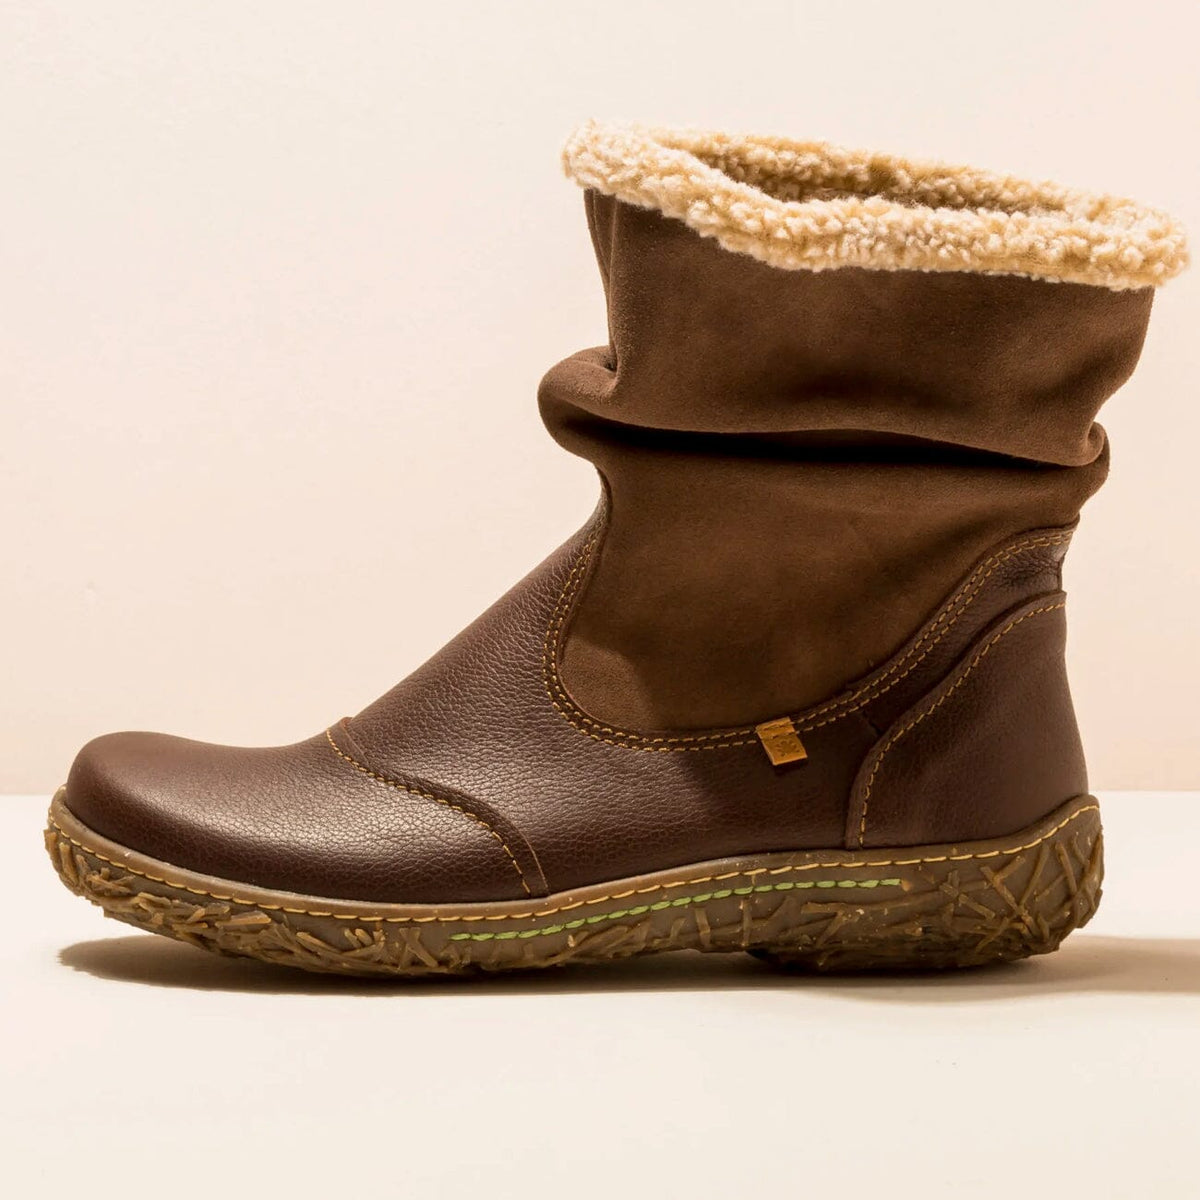 El Naturalista, NIDO ELLA, Boot, Natural Grain Leather, Brown Boots El Natura Lista 